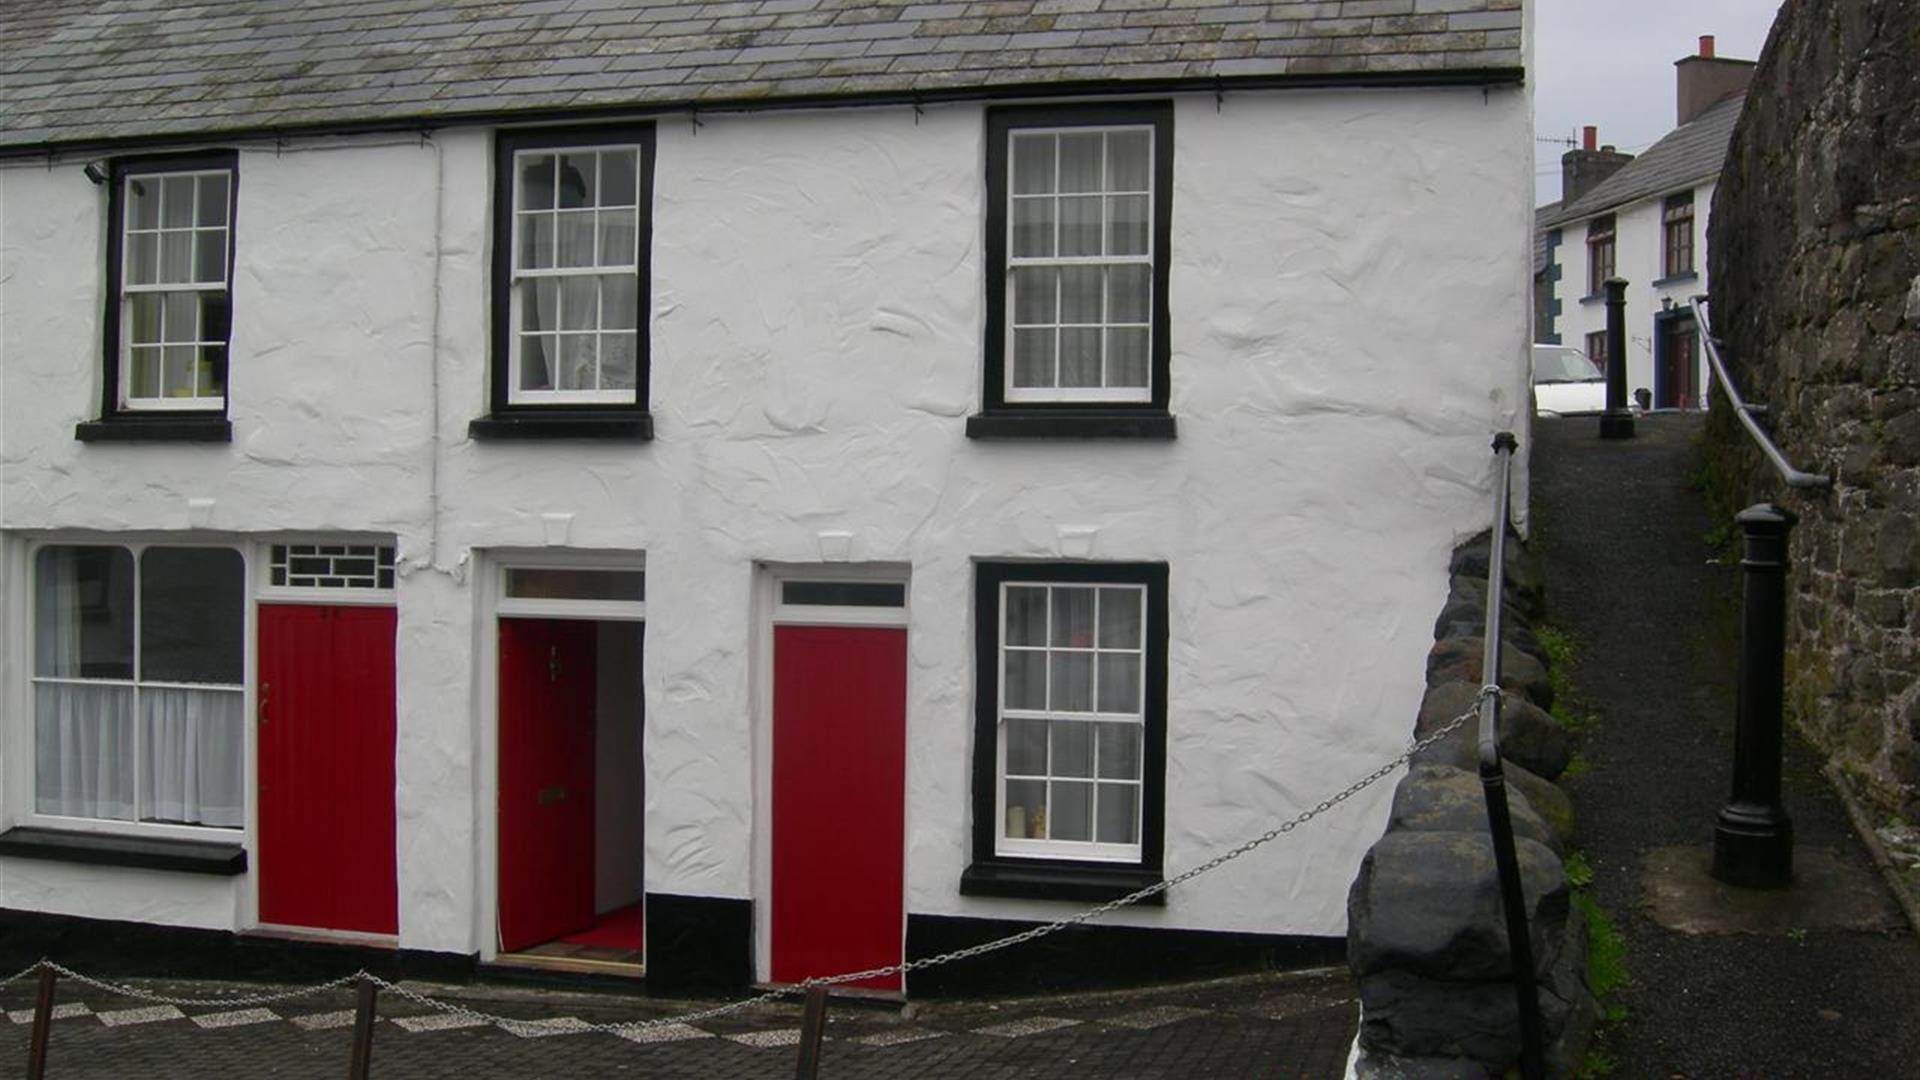 The Quarrymen's Cottages A